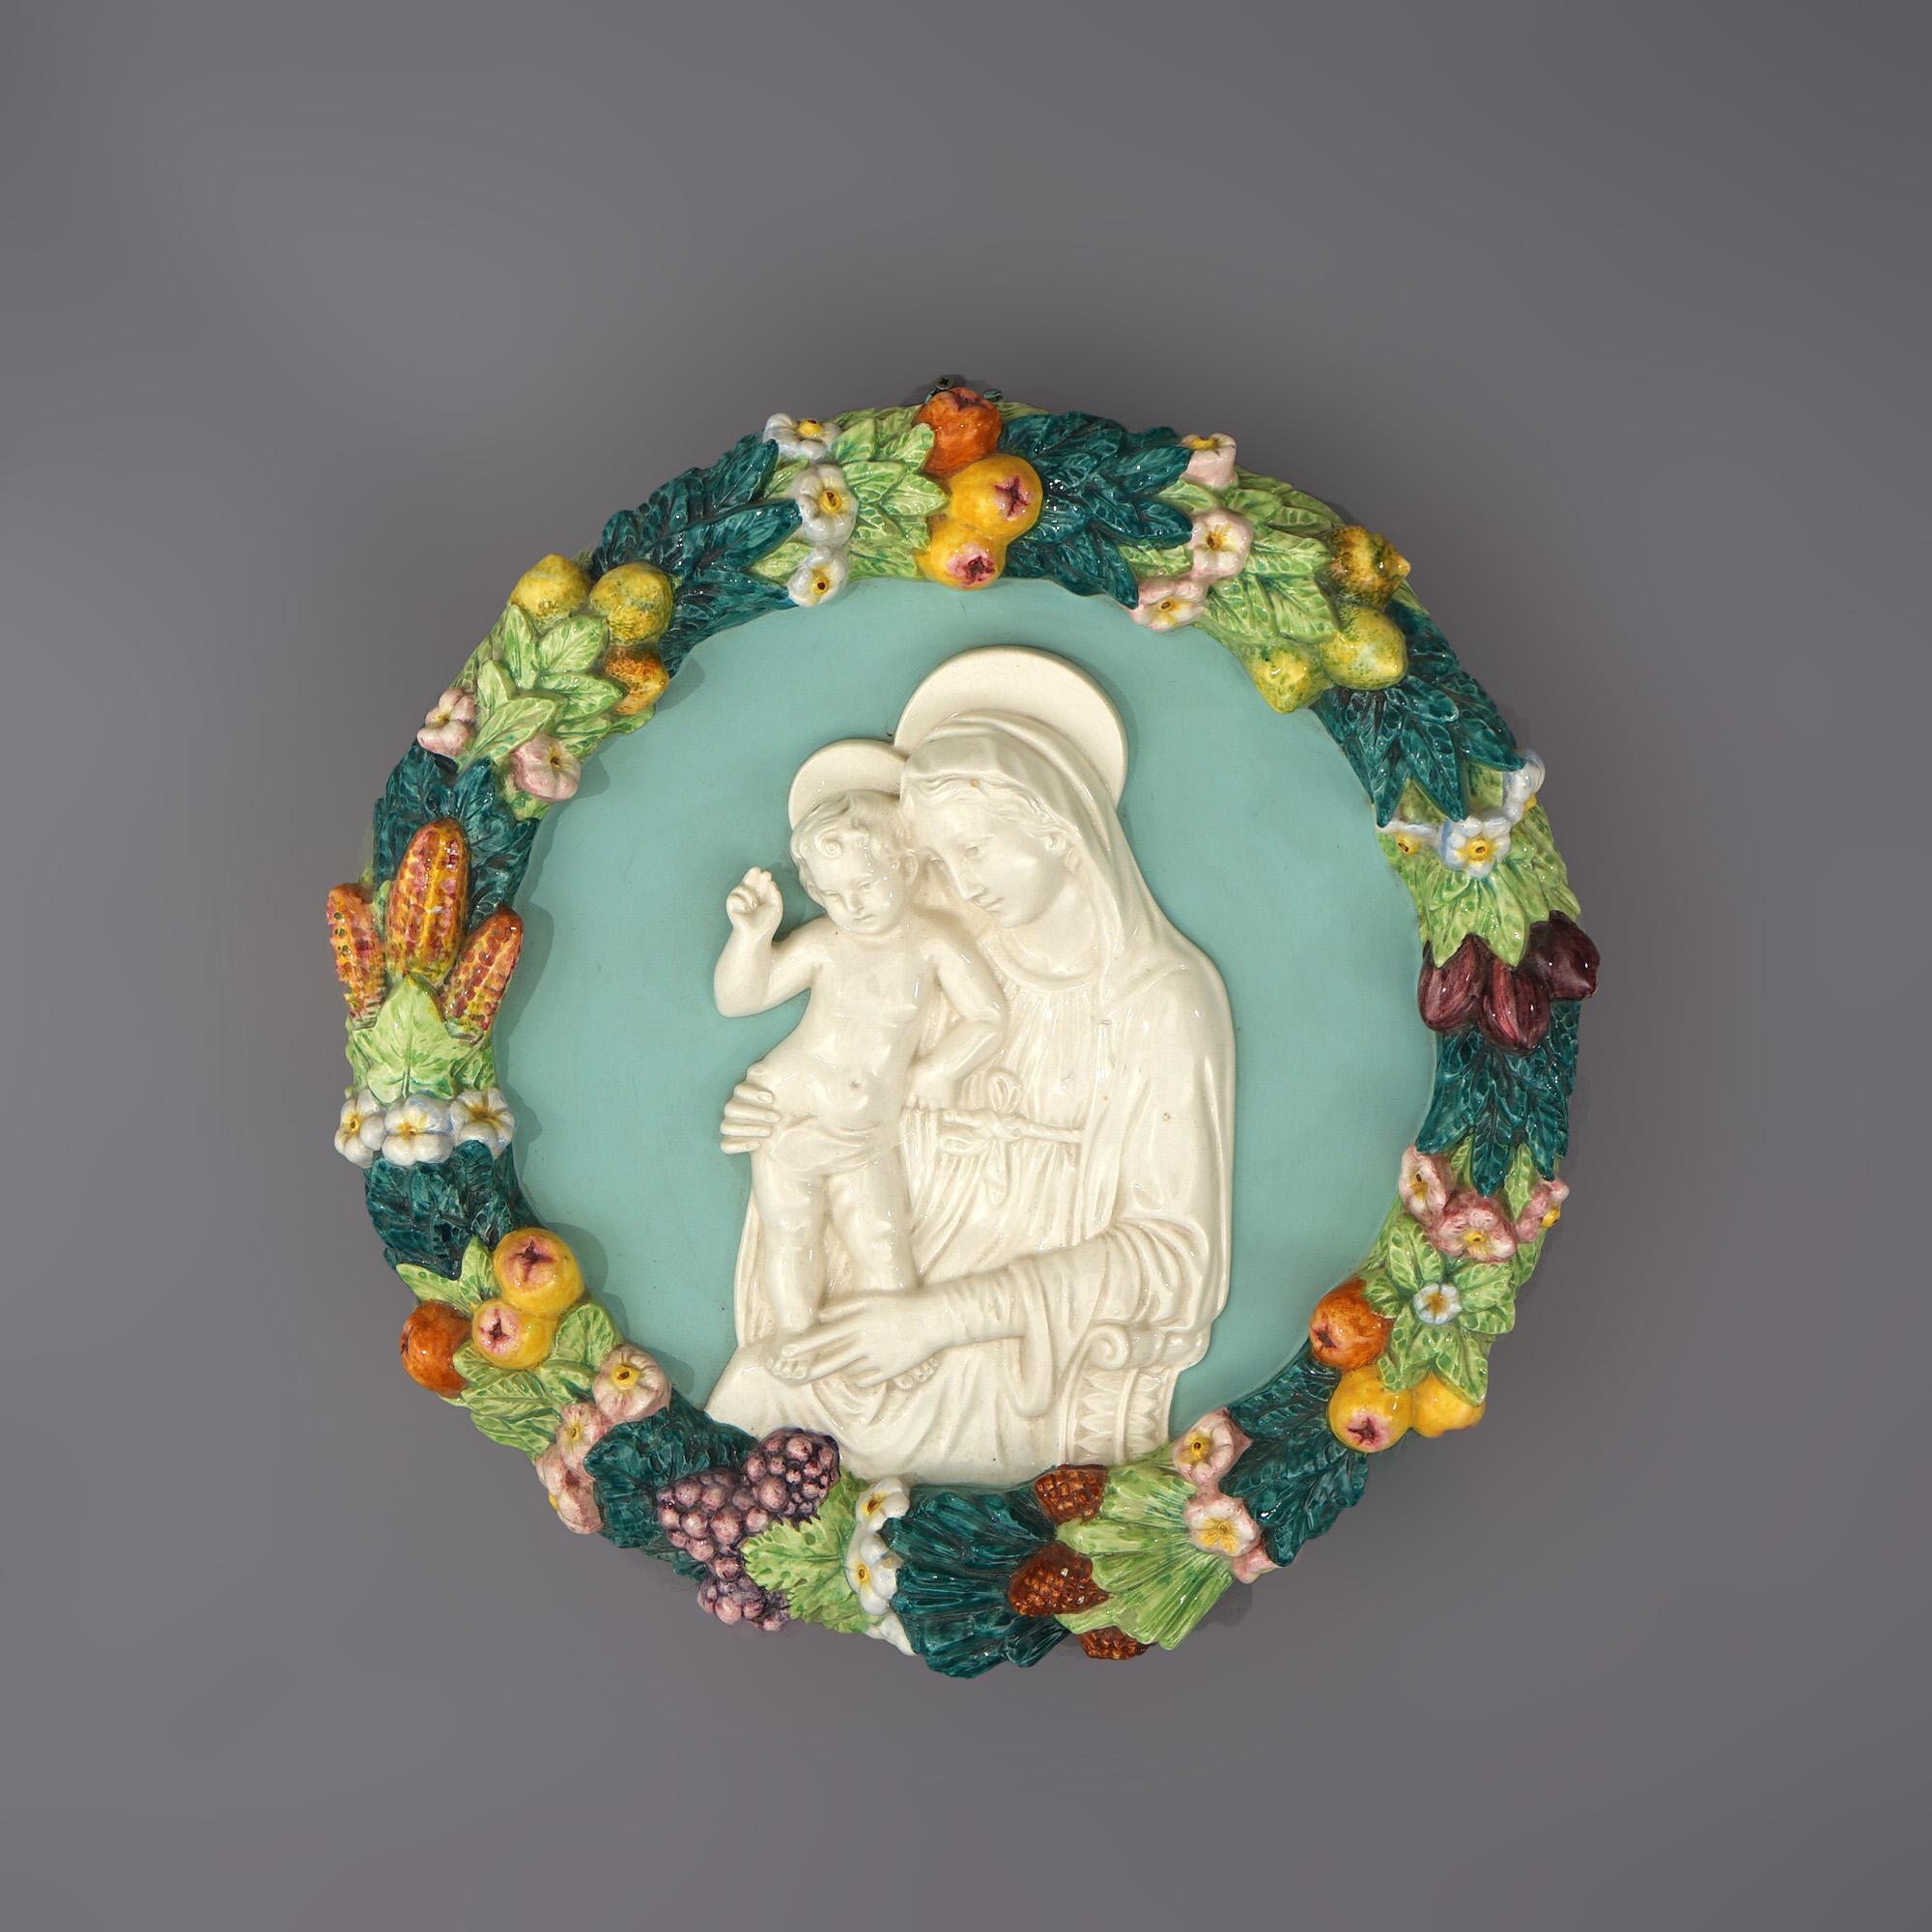 Plaque en poterie italienne de Della Robin représentant Marie et l'enfant avec des fruits et une couronne de fleurs 20e C

Mesures - 3,5 